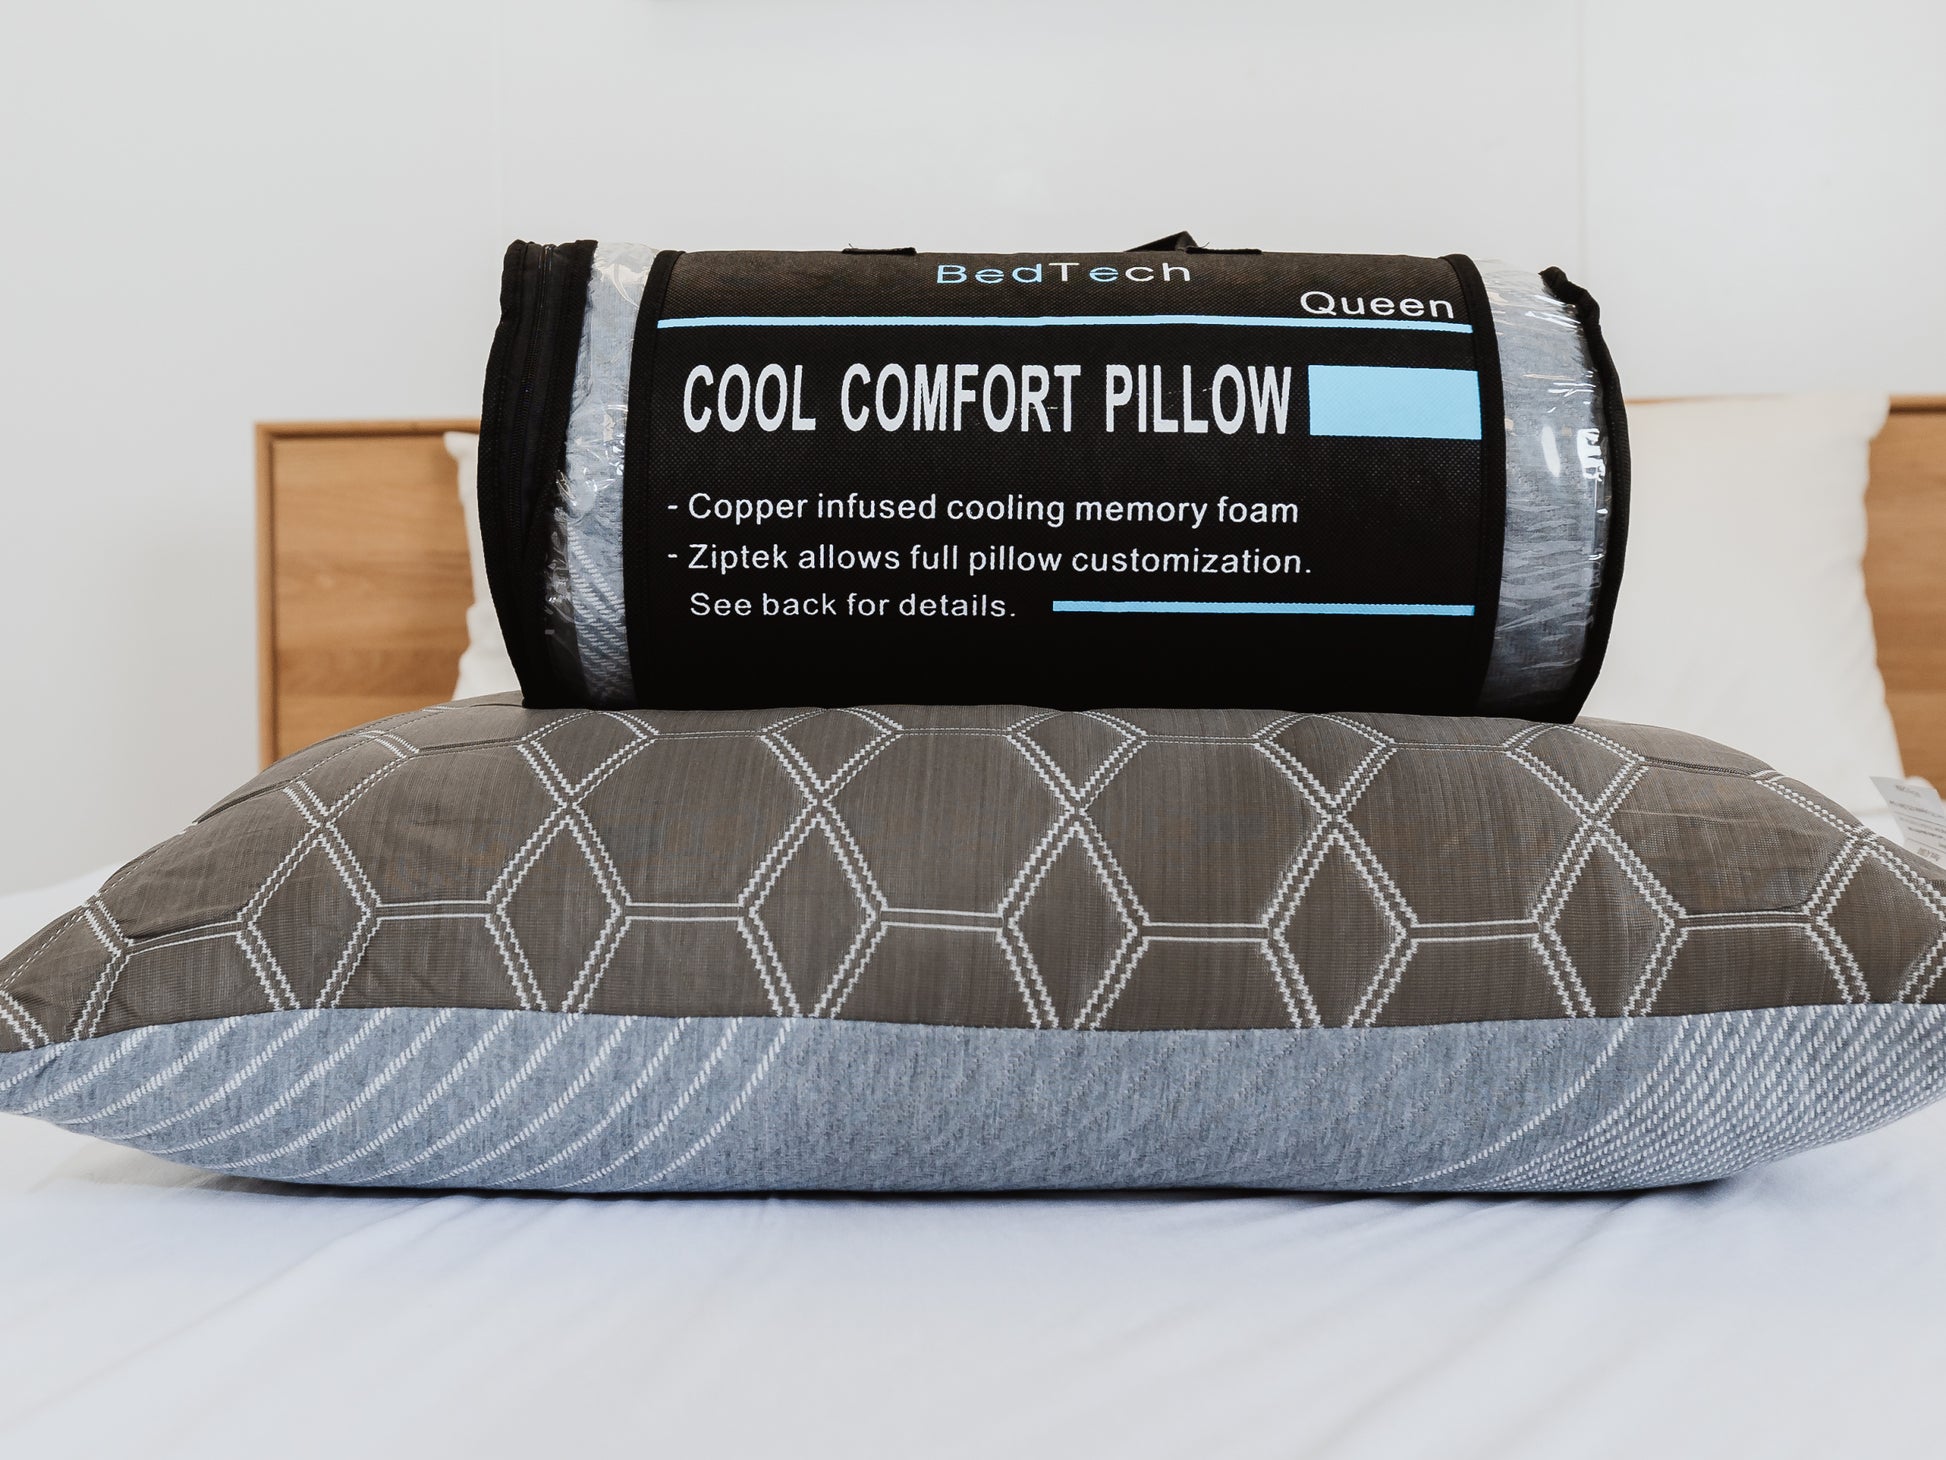 Comfort Rest Pillow Shredded - White Foam